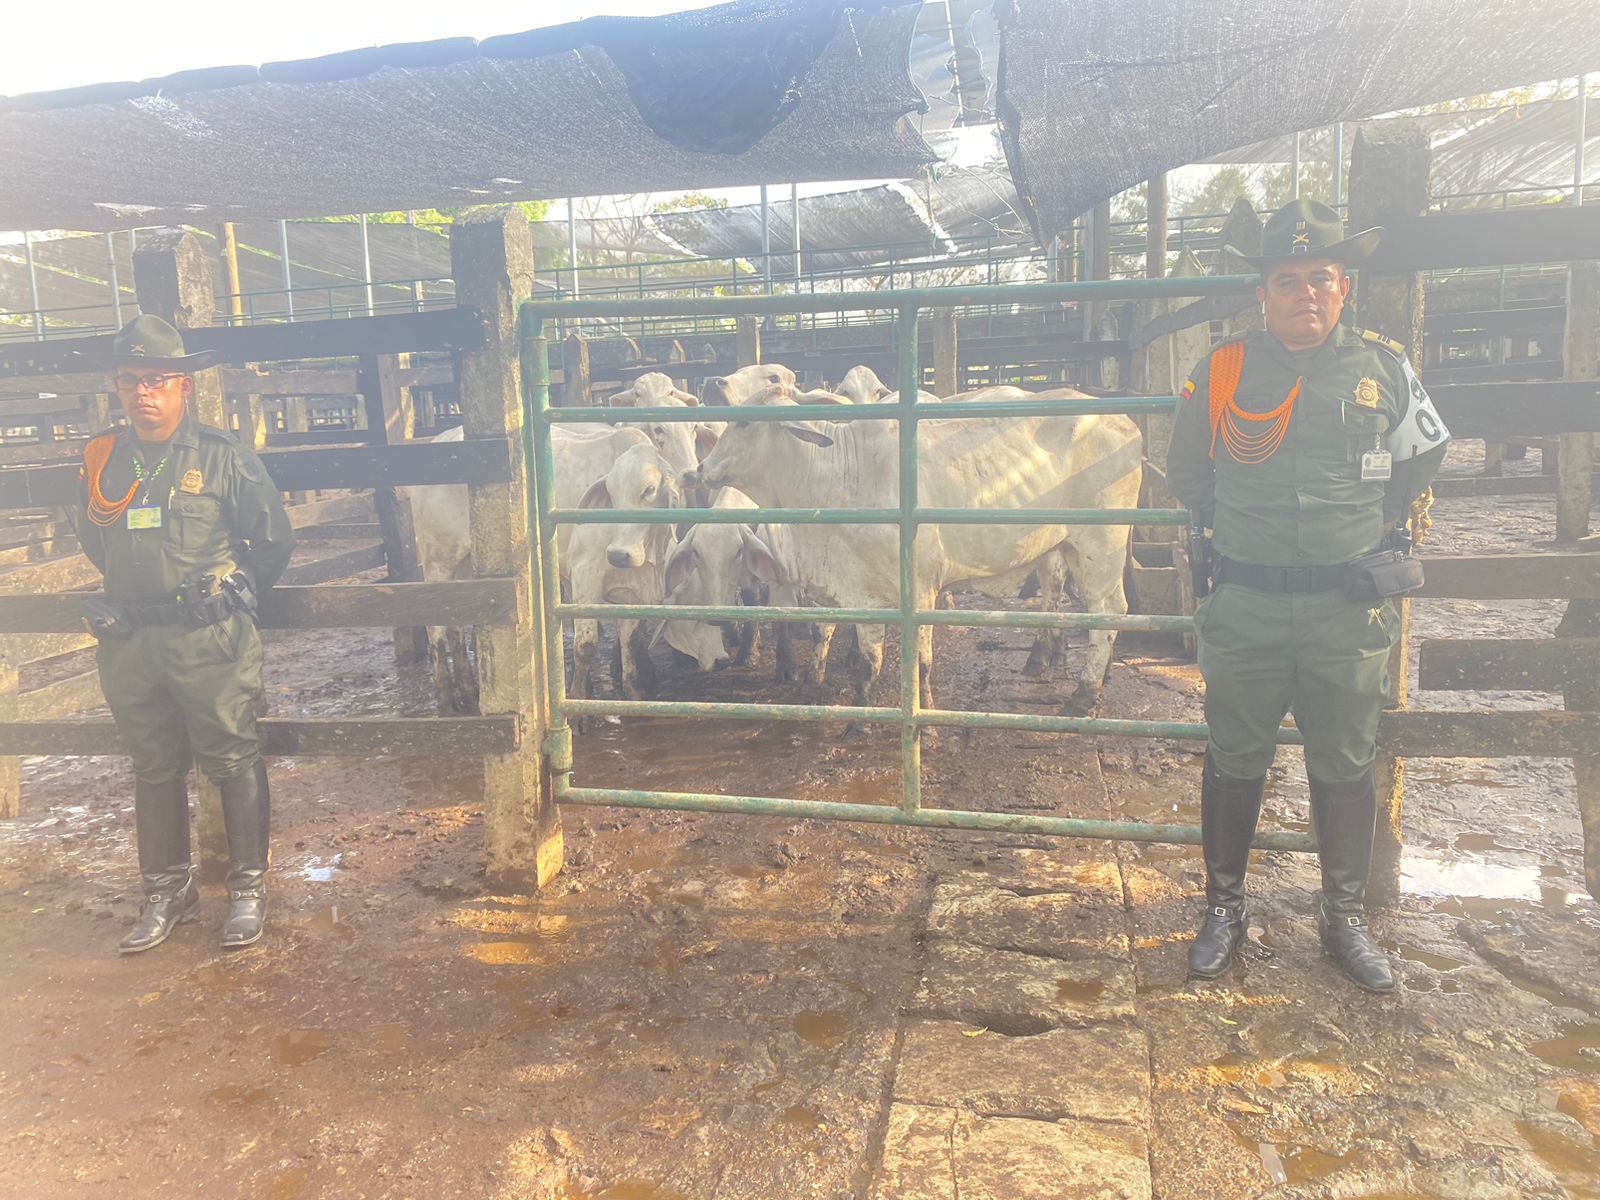 Mano dura, autoridades recuperan 12 vacas que fueron hurtadas en el área metropolitana de Montería